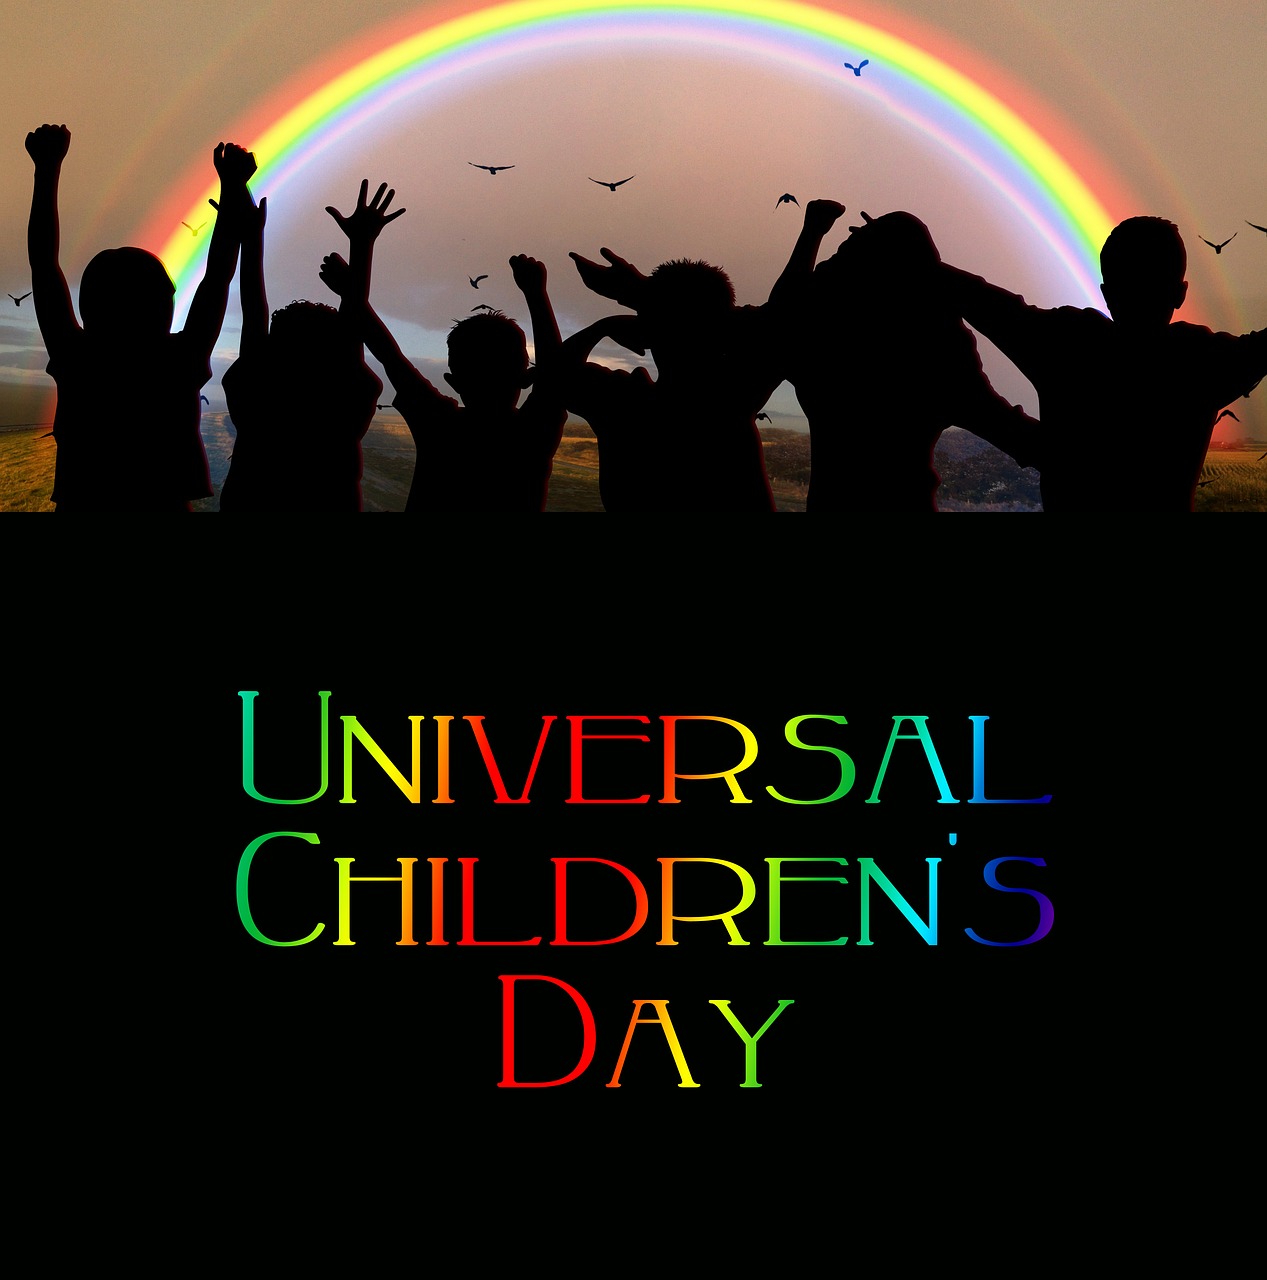 Pasaulio Vaikų Diena, Festivalis, Švesti, Vaivorykštė, Vaikai, Siluetai, Žmogus, Džiaugsmas, Grupė, Entuziazmas